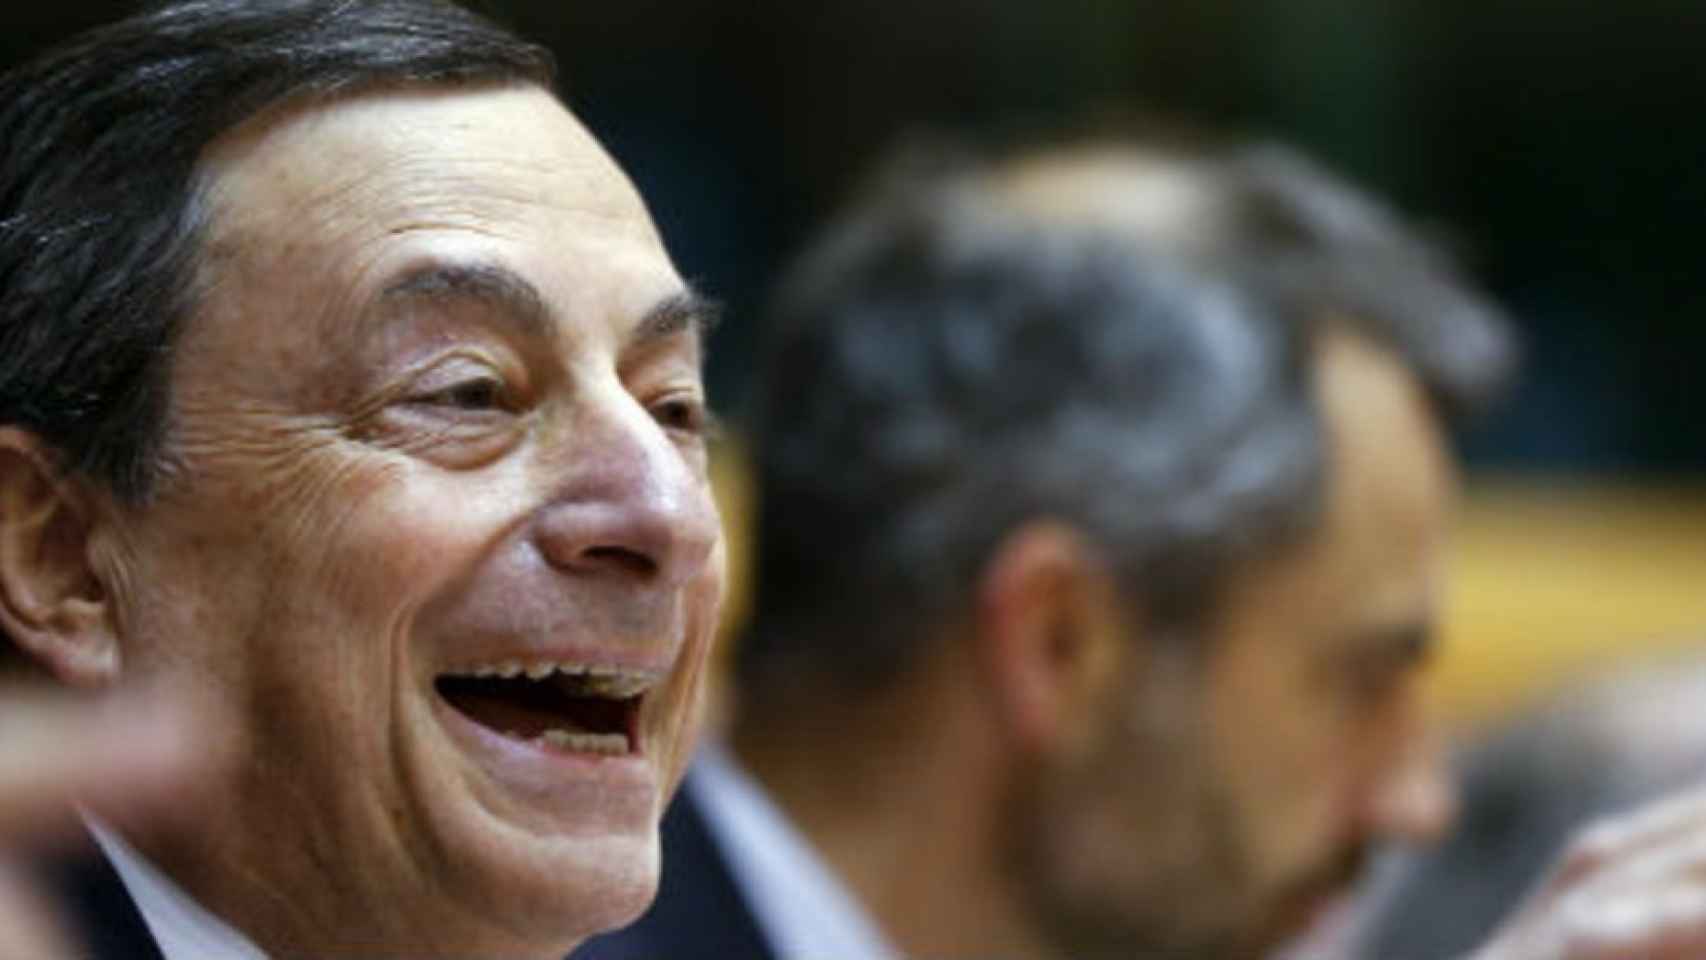 Draghi asegura que la recuperación económica en la eurozona es más sólida